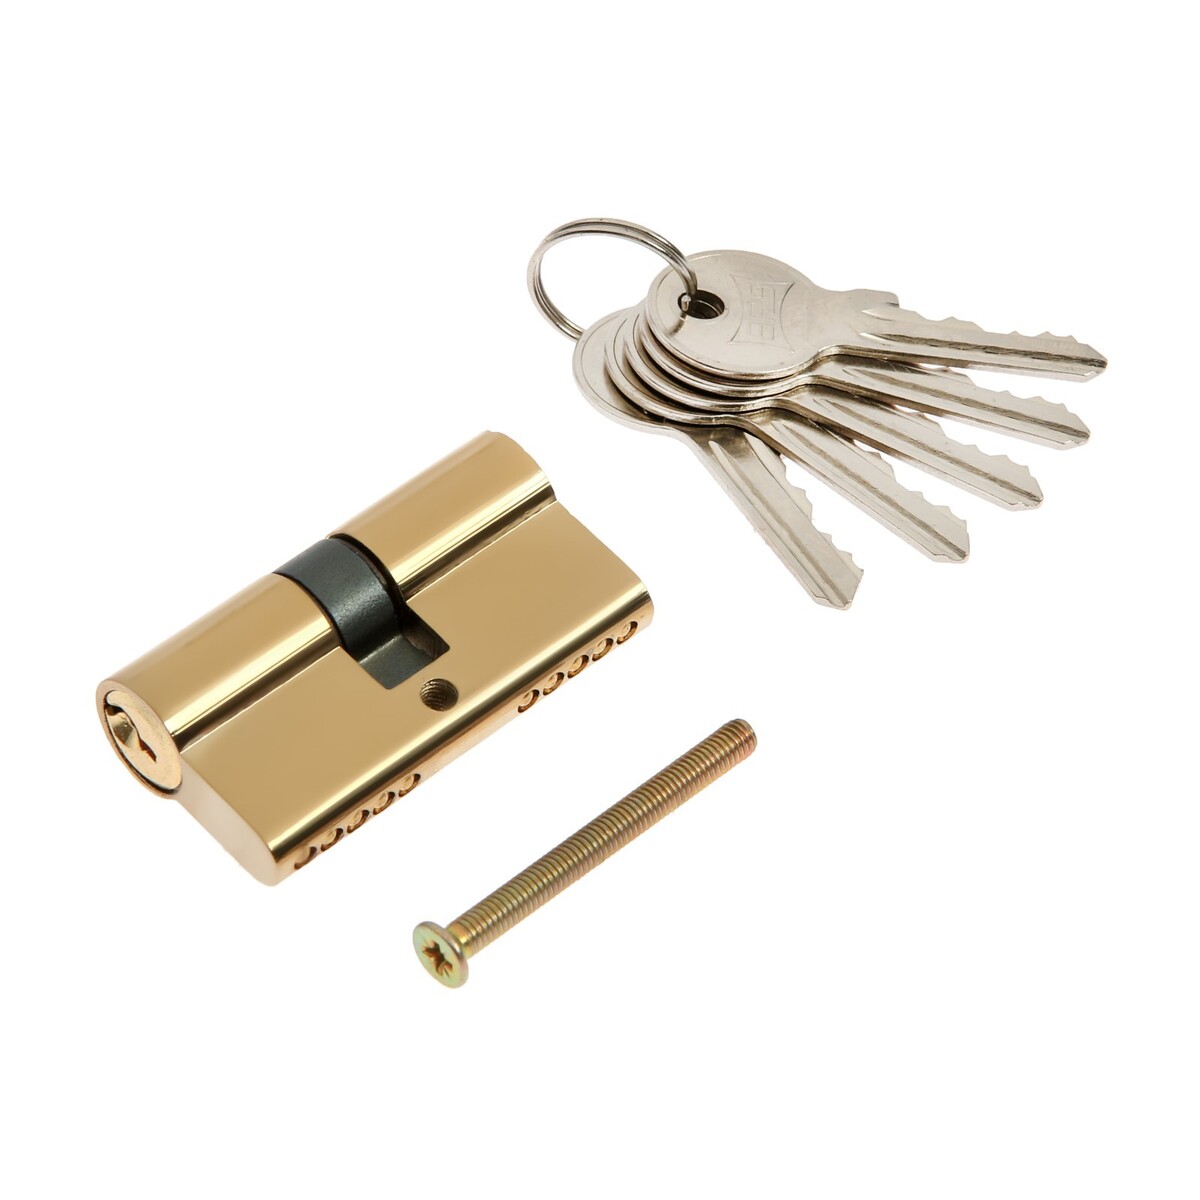 Цилиндровый механизм, 60 мм, английский ключ, 5 ключей, цвет золото цилиндровый механизм 60 мм английский ключ 5 ключей хром